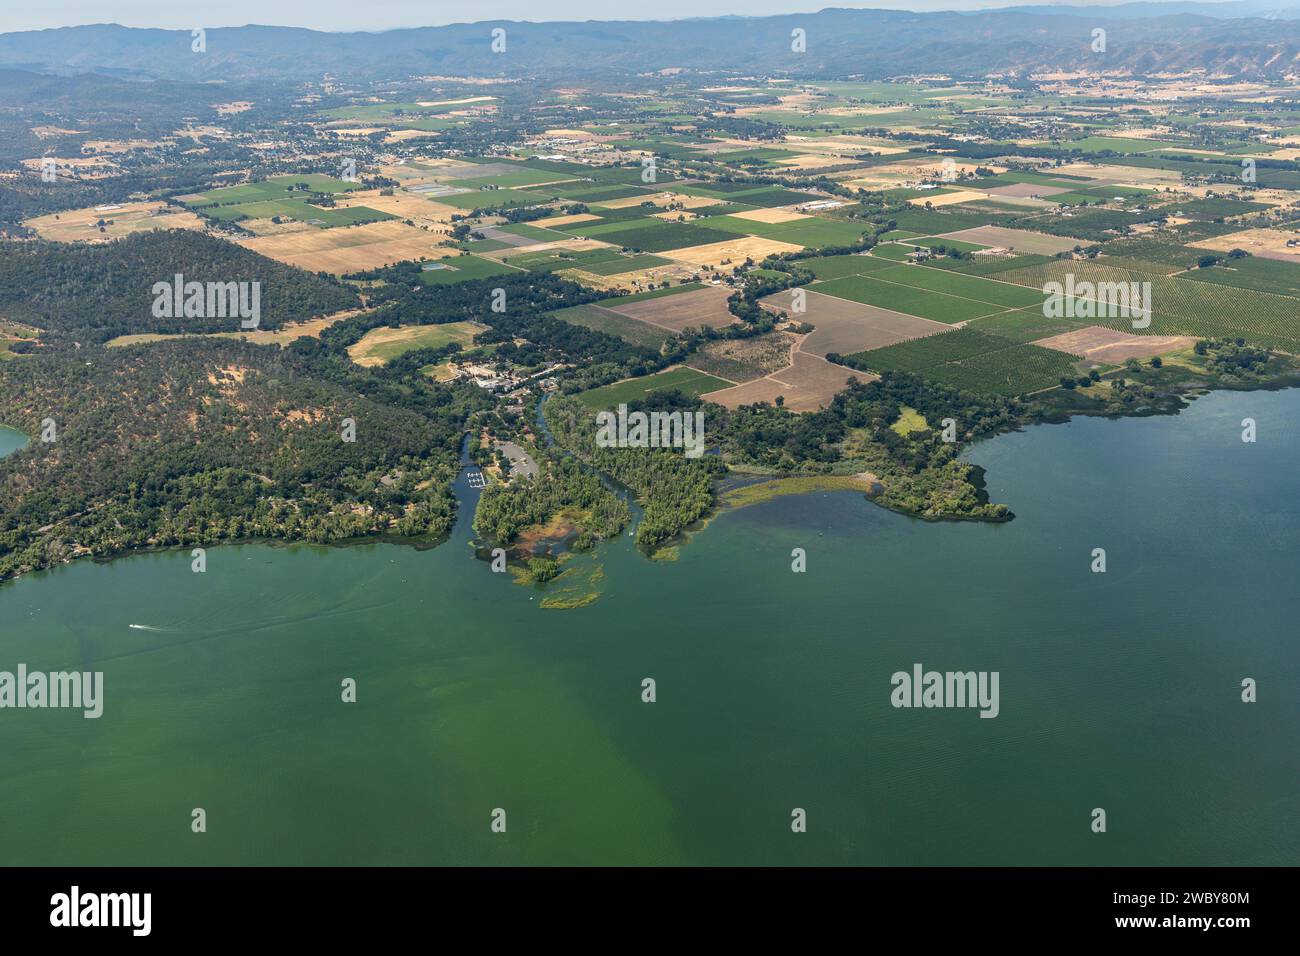 Luftaufnahme des verschmutzten Grünwassers von Clear Lake und die Umweltauswirkungen des landwirtschaftlichen Abflusses, der Algenblüten verursacht Stockfoto